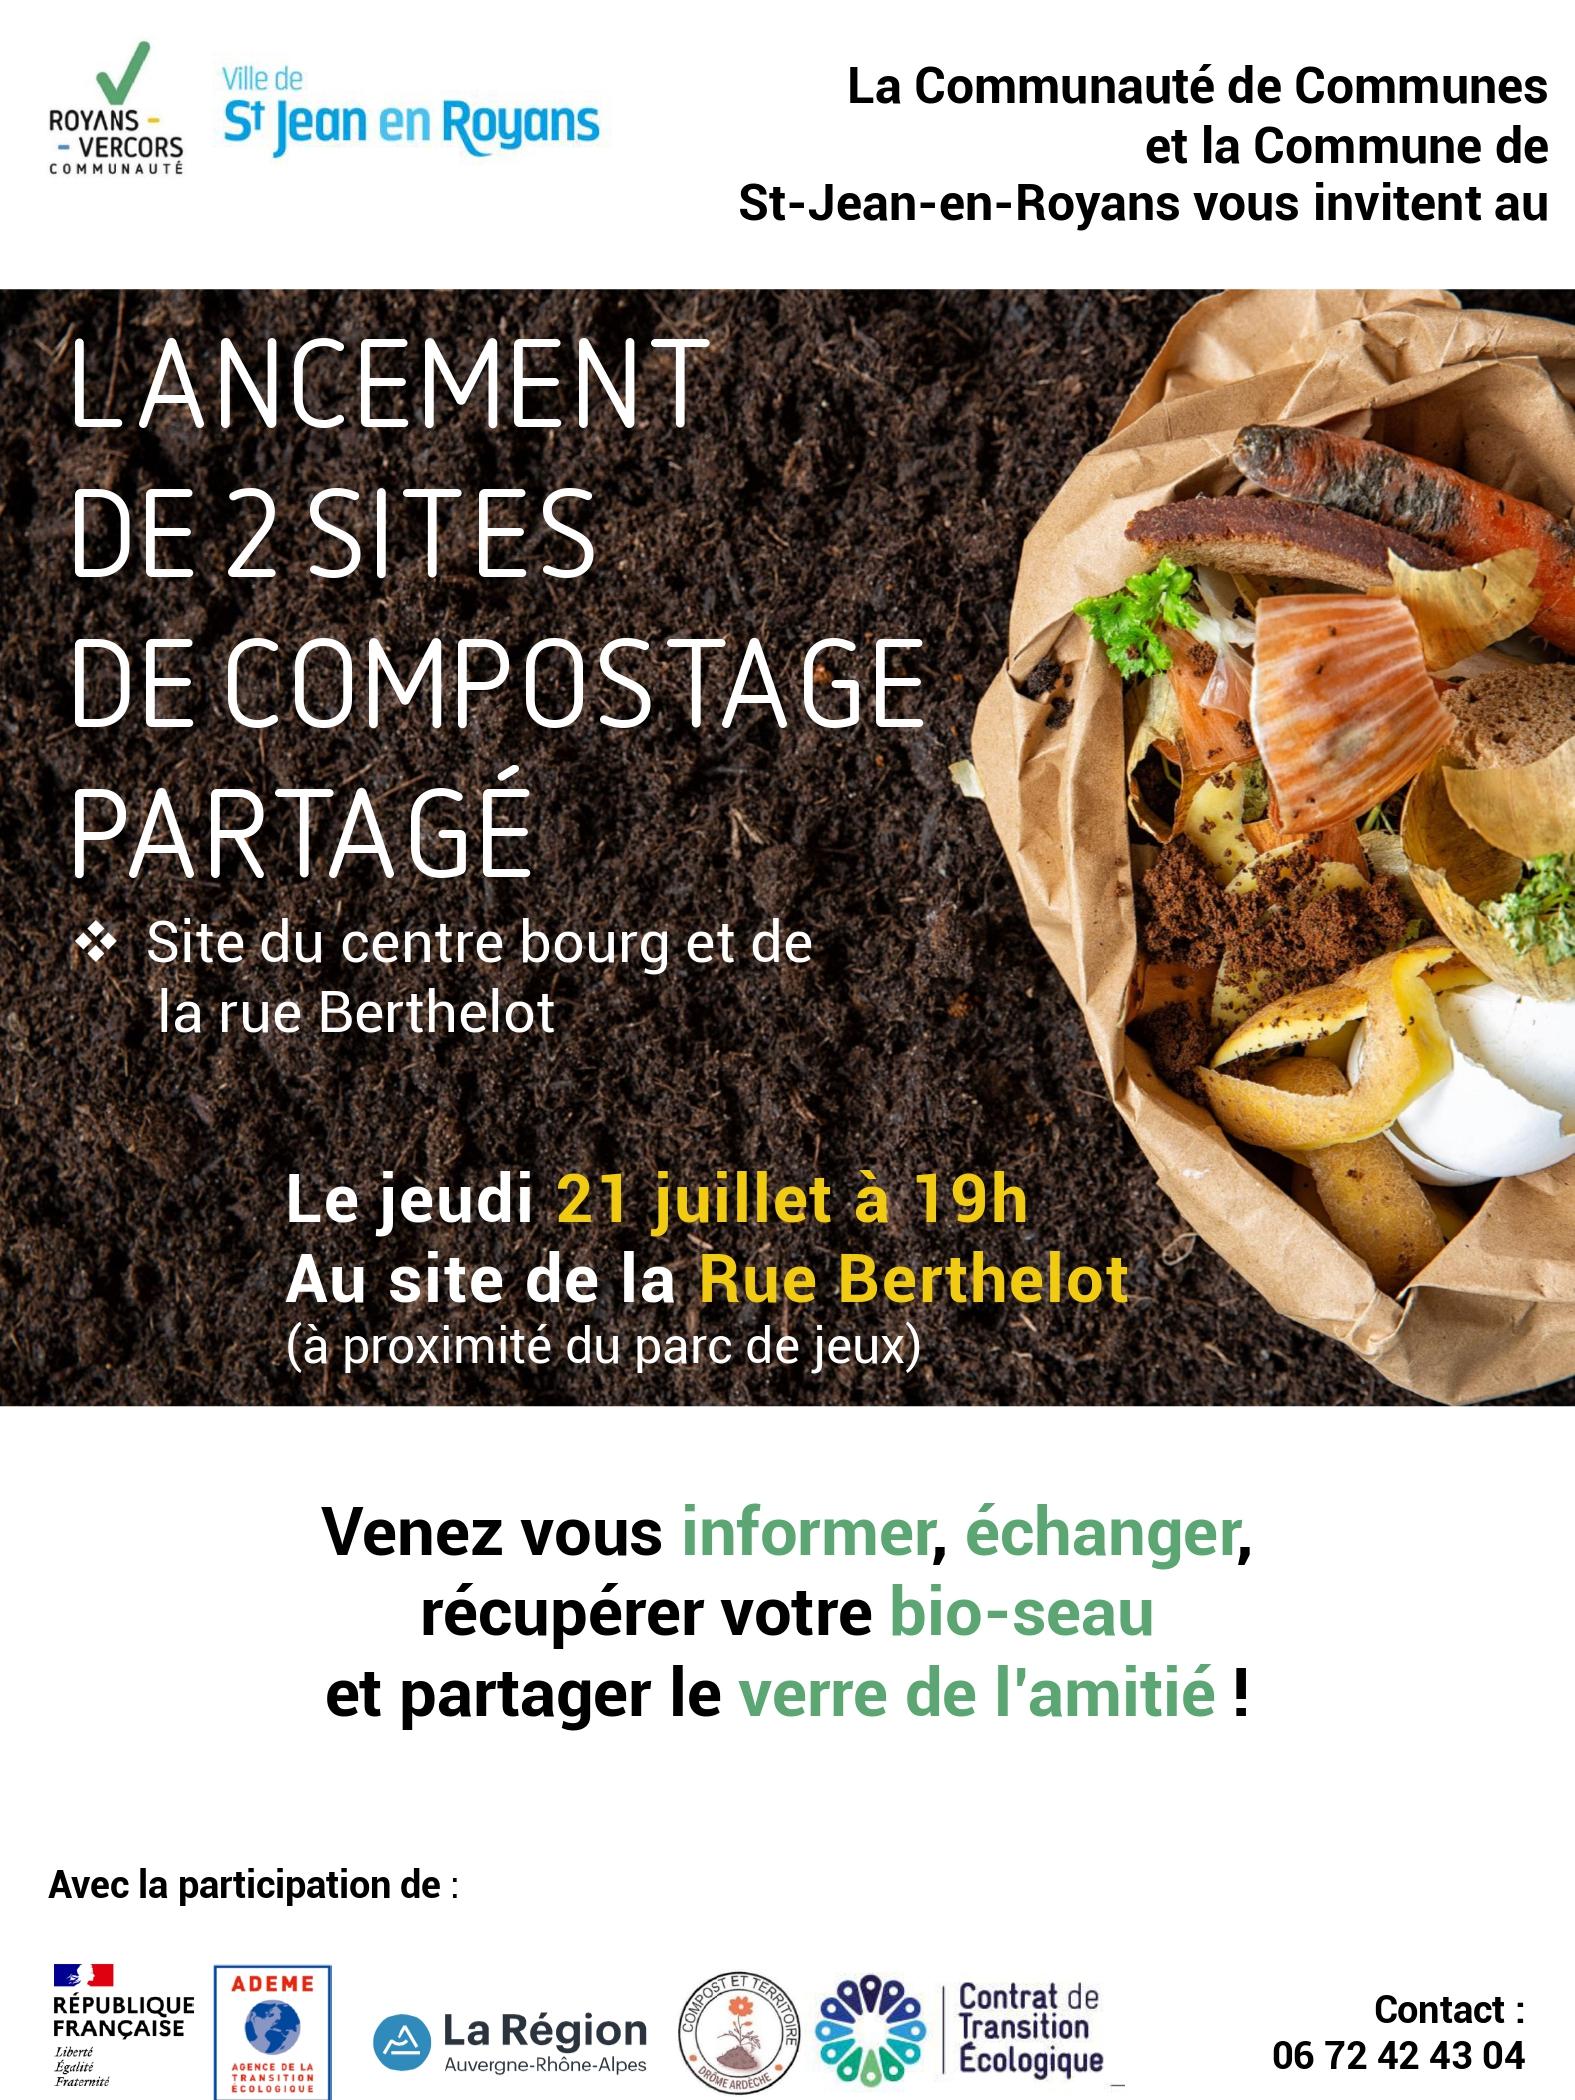 Image de couverture - Lancement de 2 sites de compostage partagé à Saint Jean !